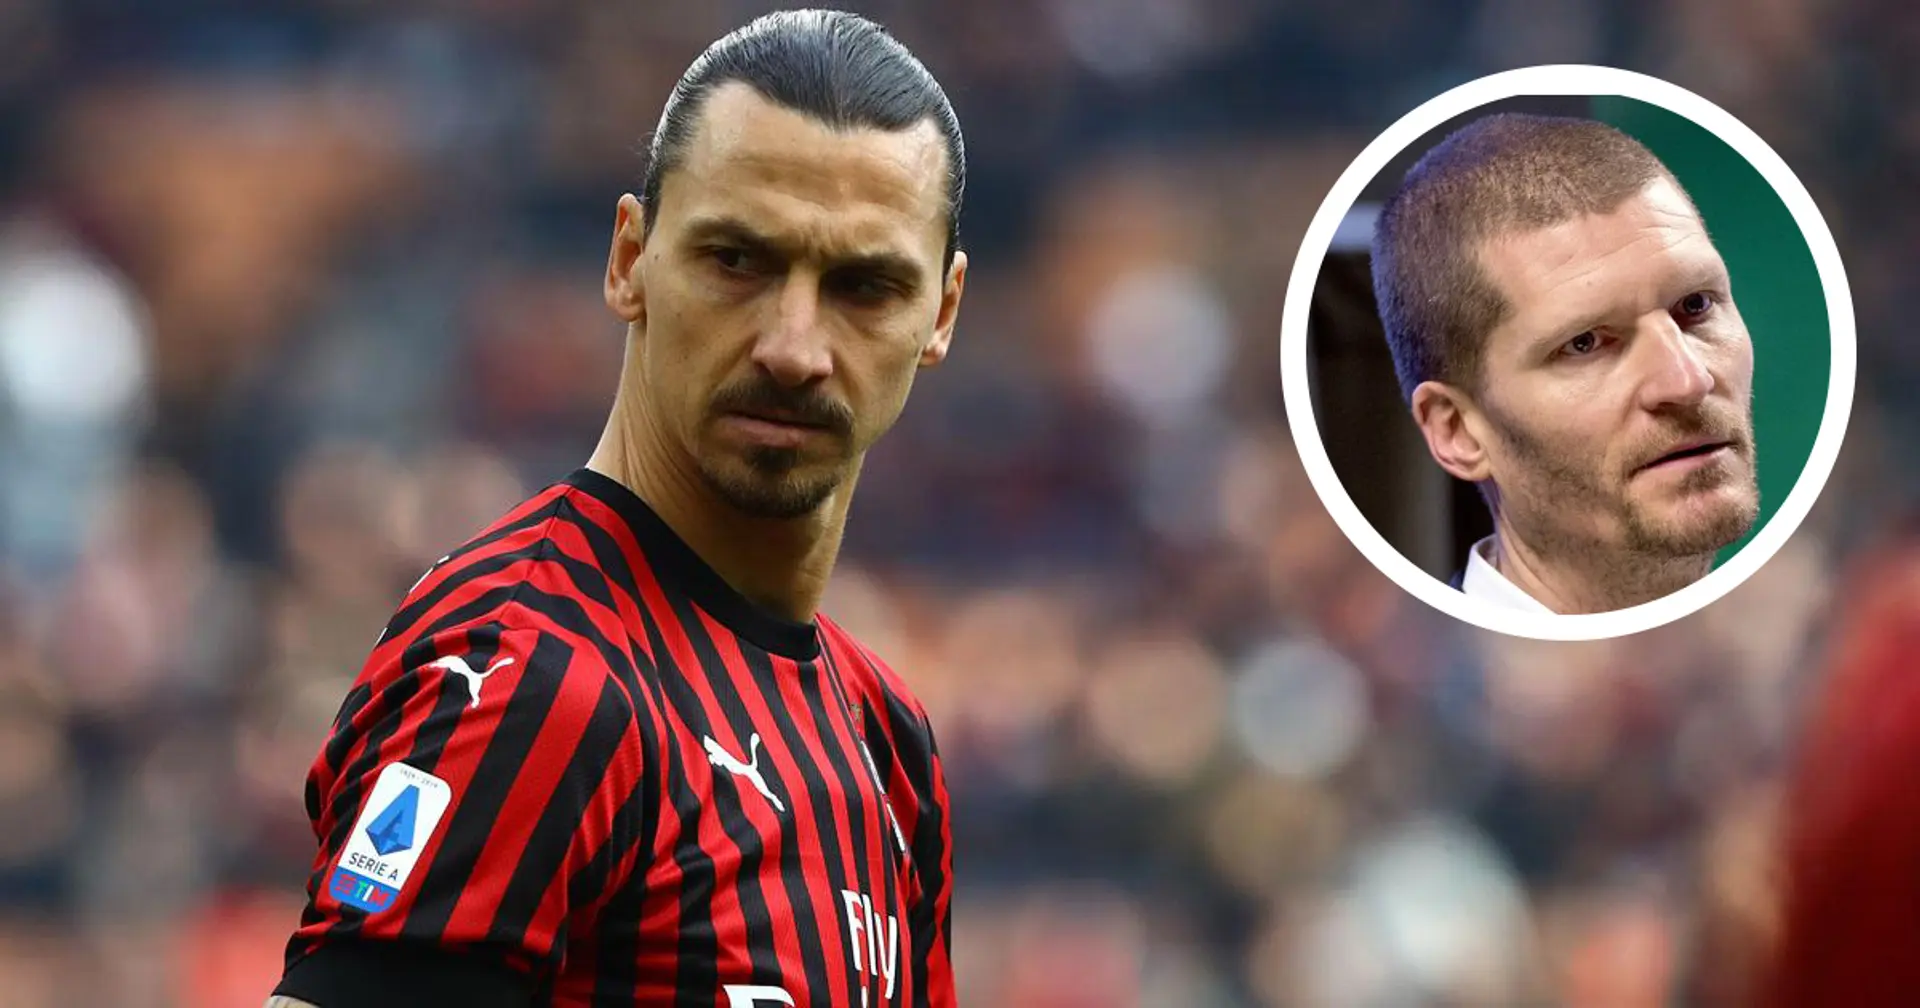 Si fa sempre più forte il richiamo di casa per Ibra: Zlatan è volato in Svezia per assistere alla partita dell'Hammarby